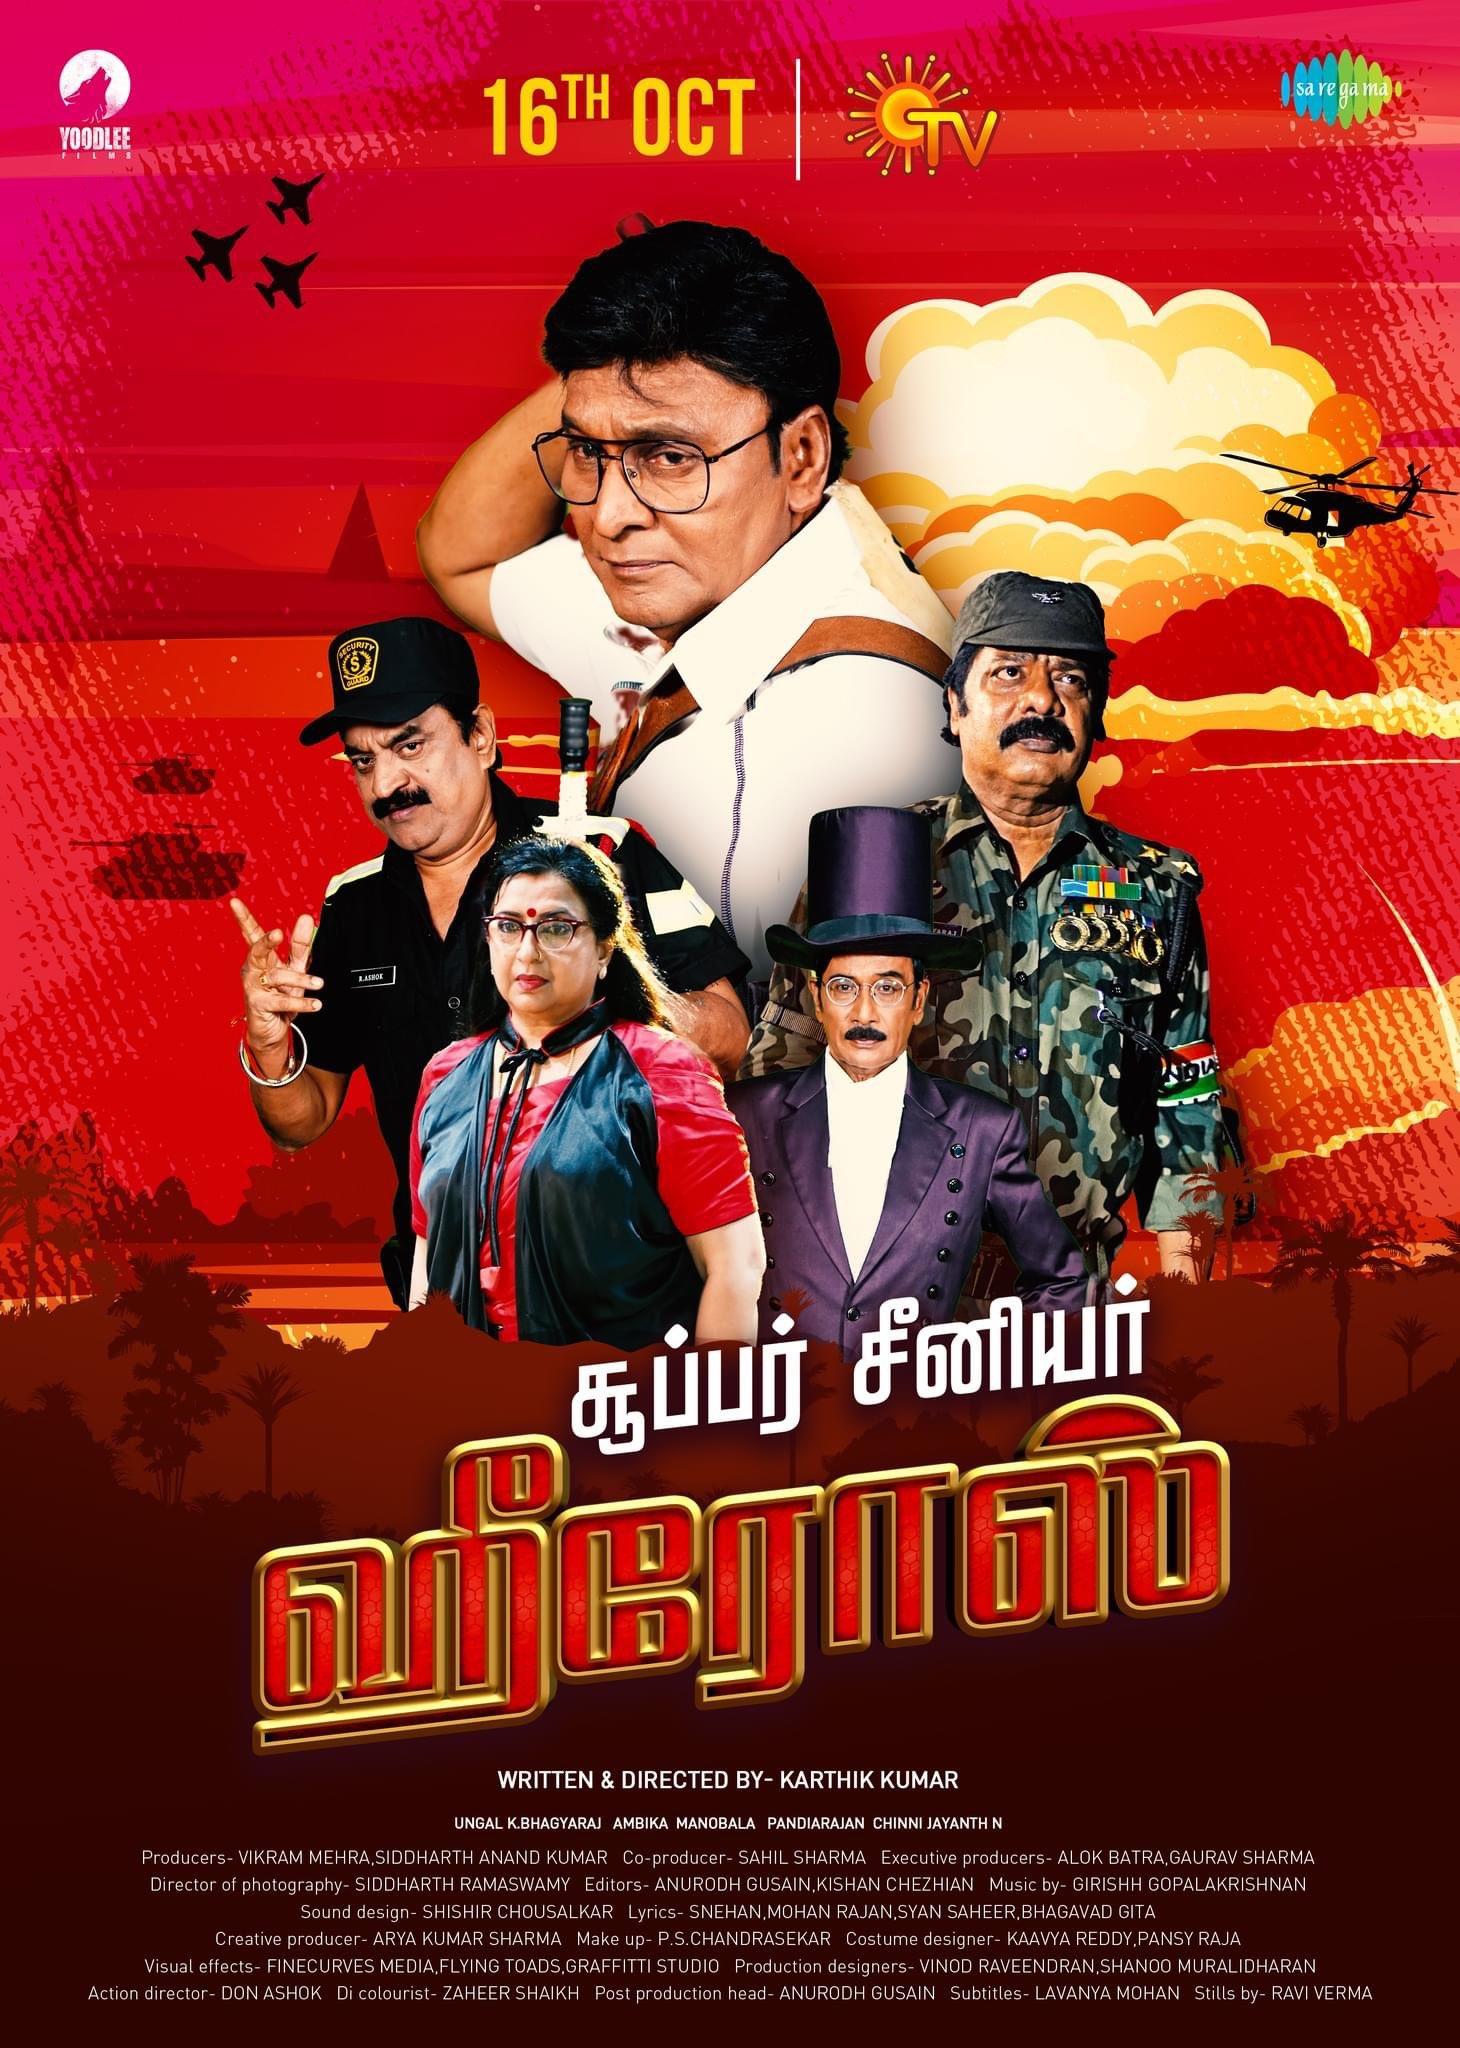 Watch Super Senior Heroes Tamil Movie Online